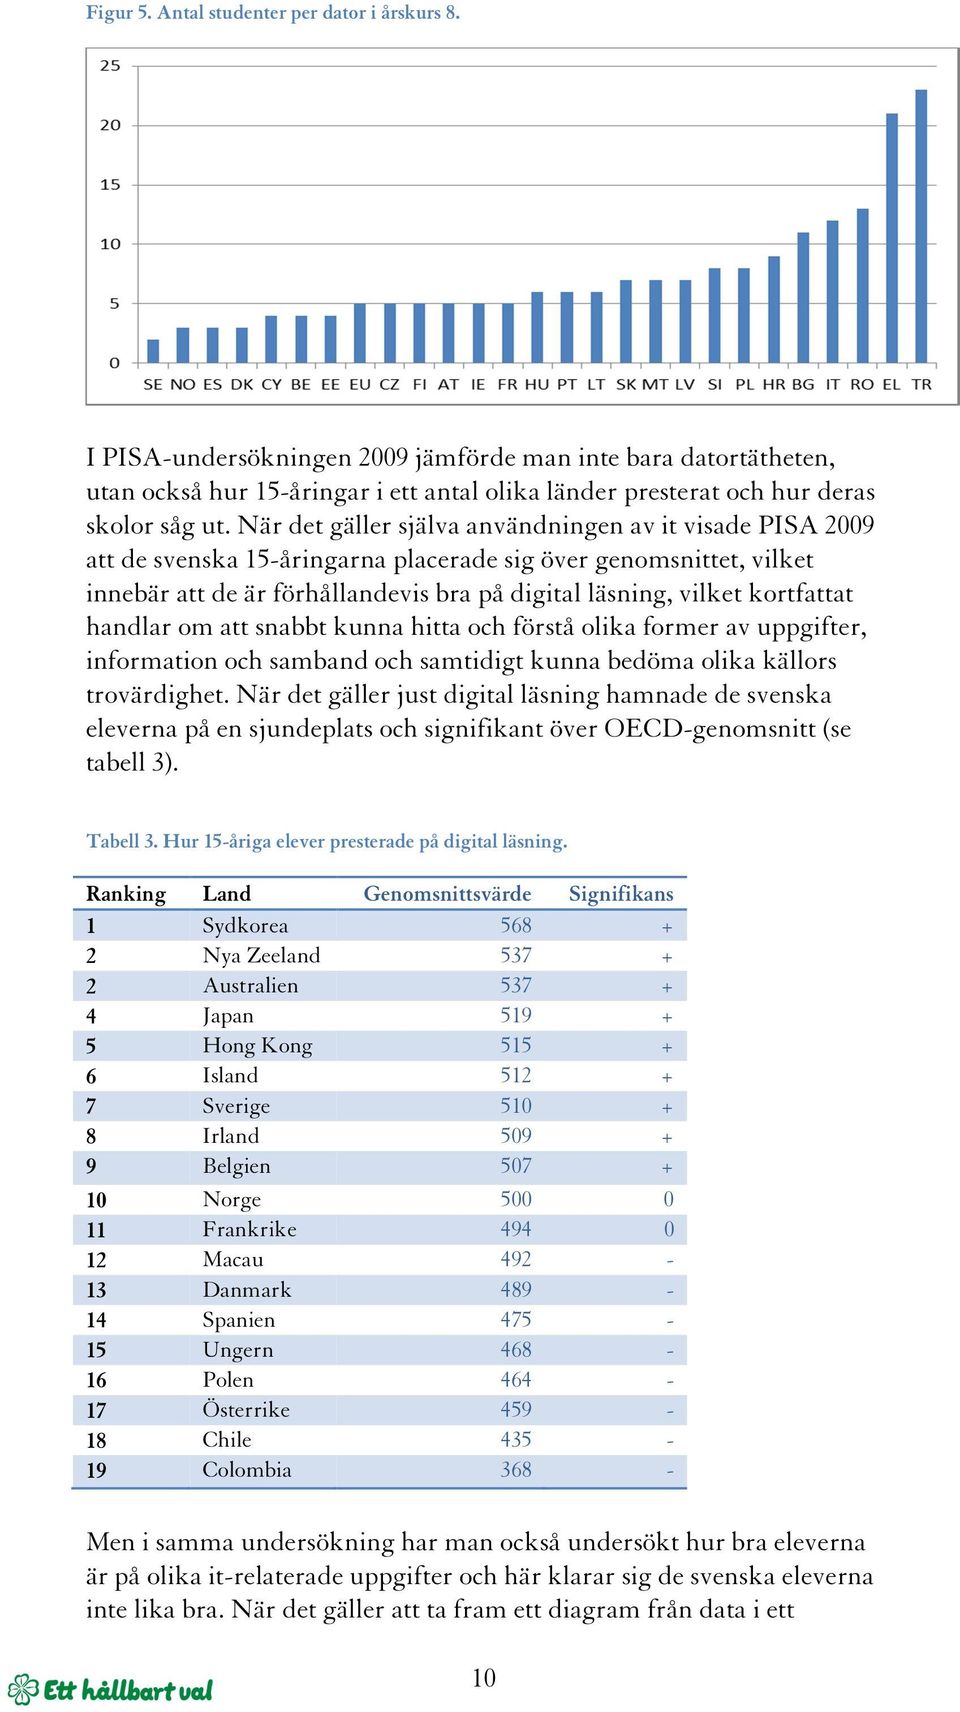 När det gäller själva användningen av it visade PISA 2009 att de svenska 15-åringarna placerade sig över genomsnittet, vilket innebär att de är förhållandevis bra på digital läsning, vilket